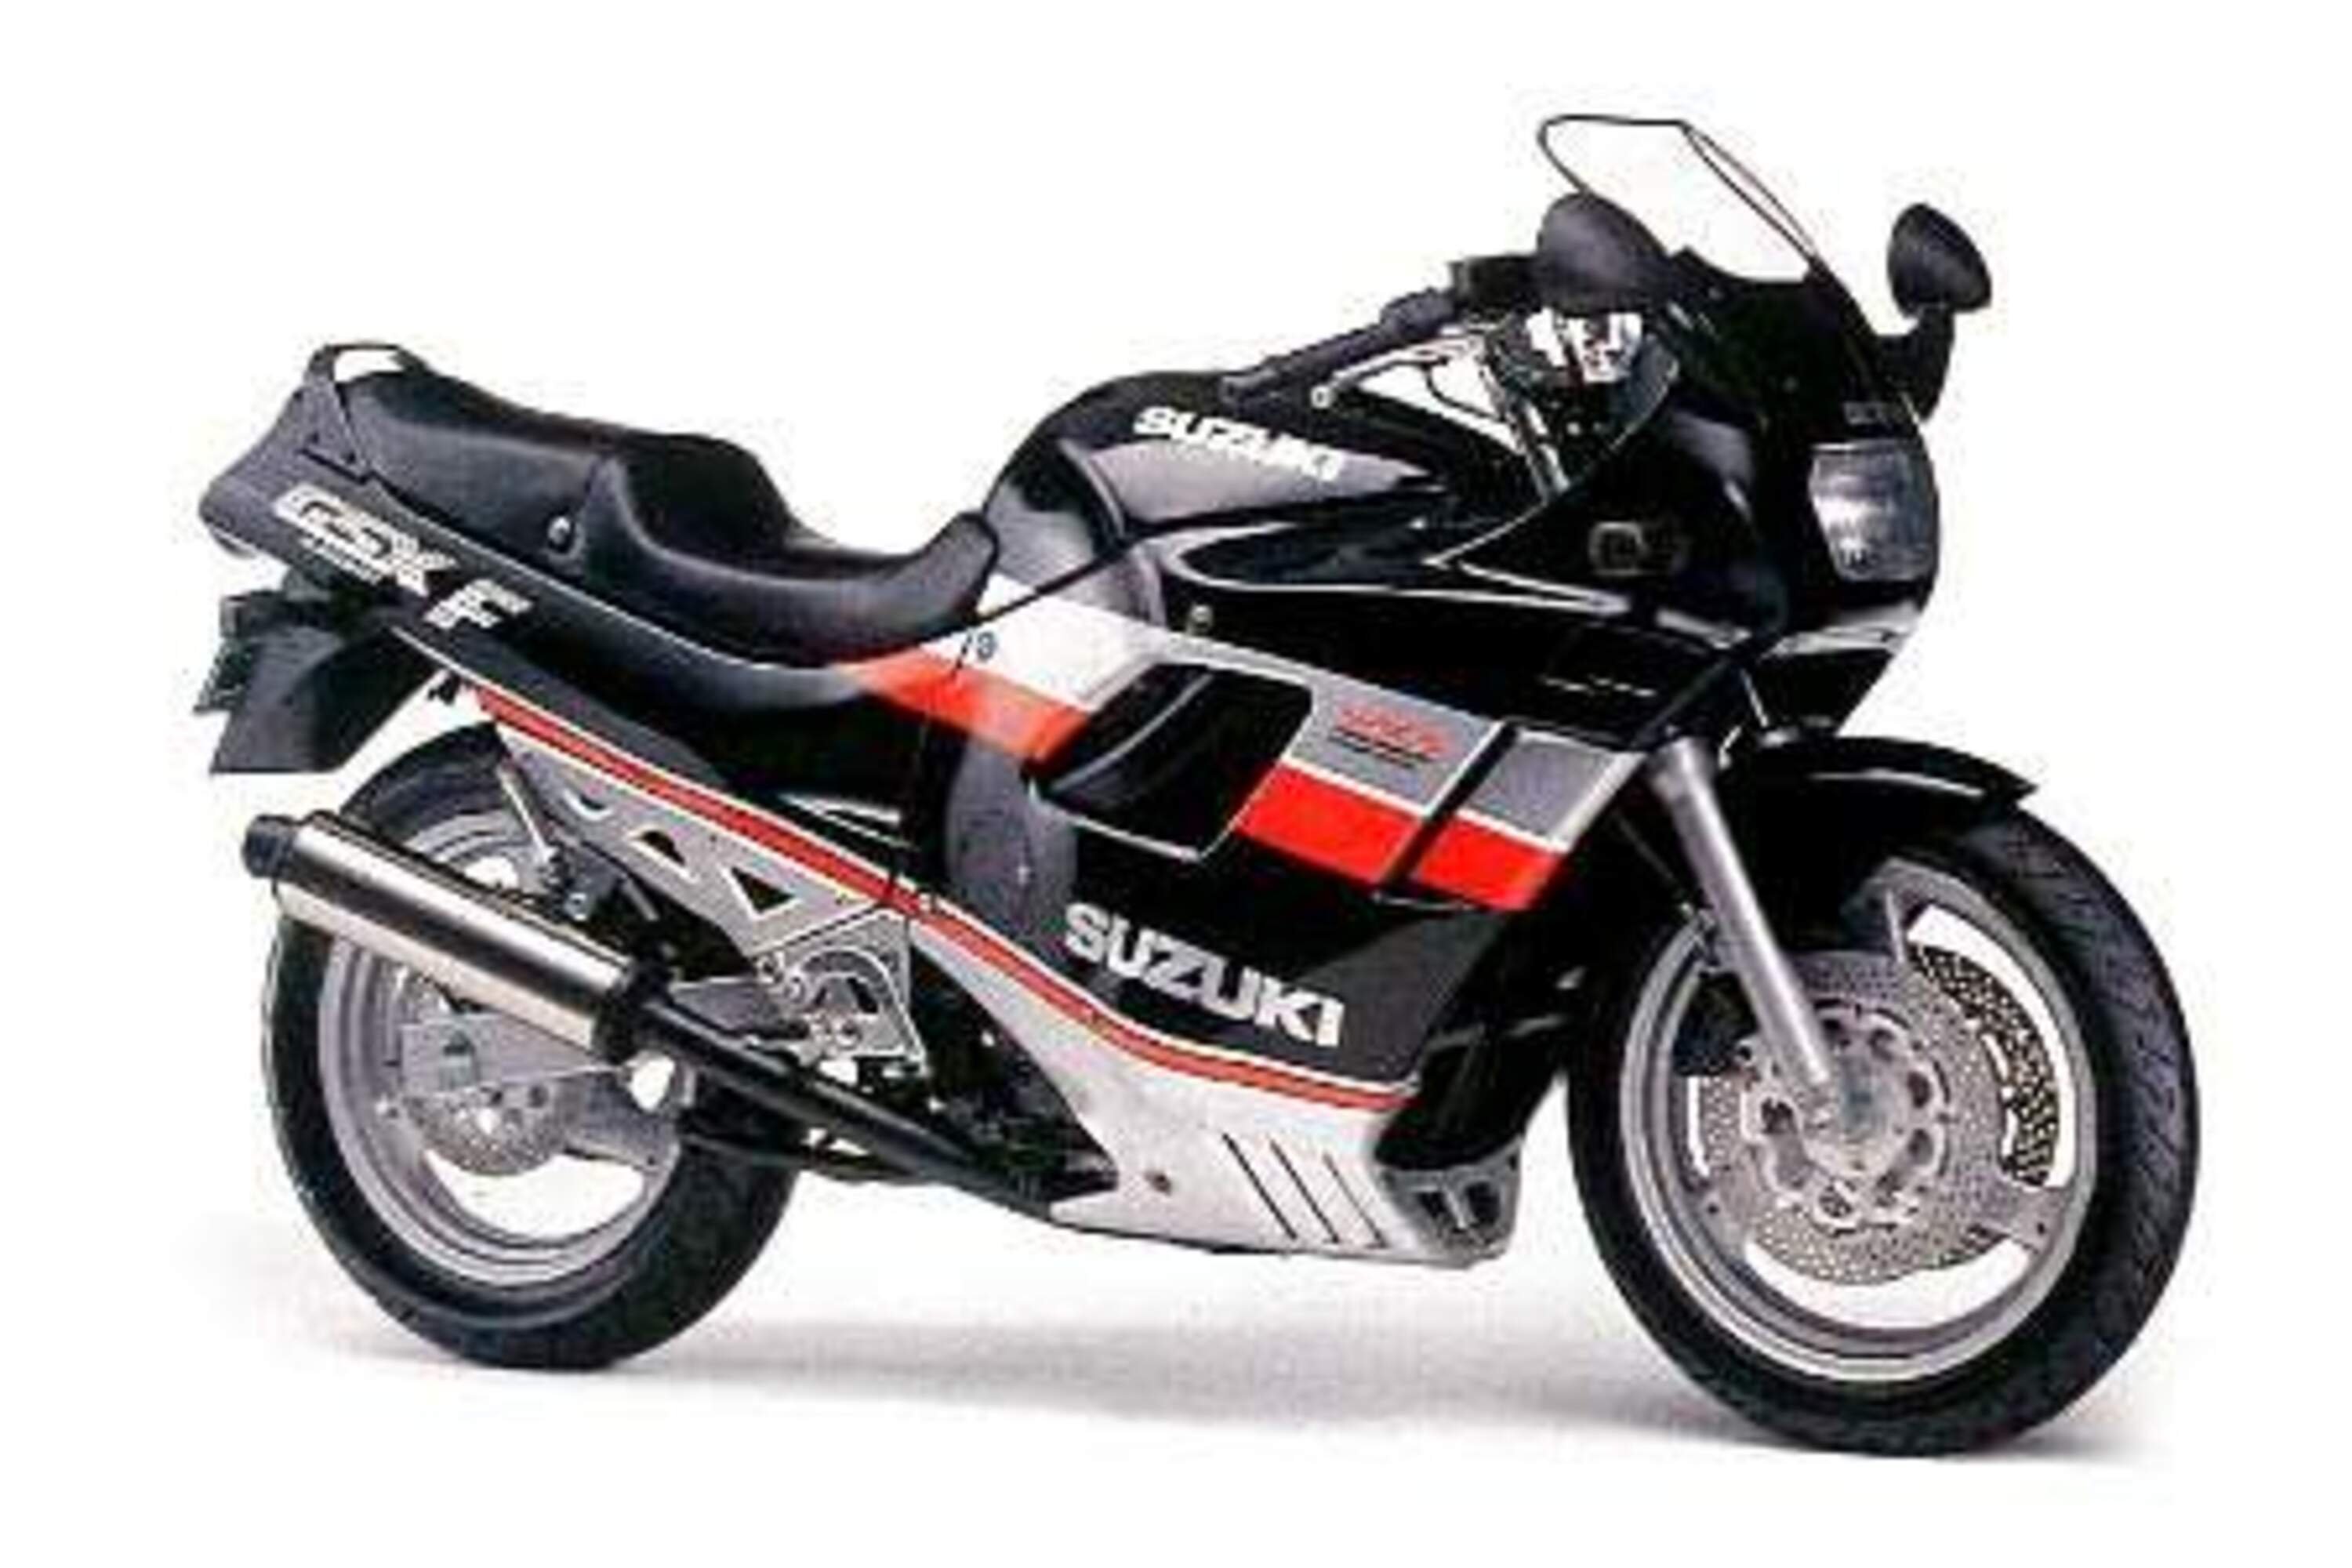 Suzuki GSX 750 F GSX 750 F (1988 - 89)